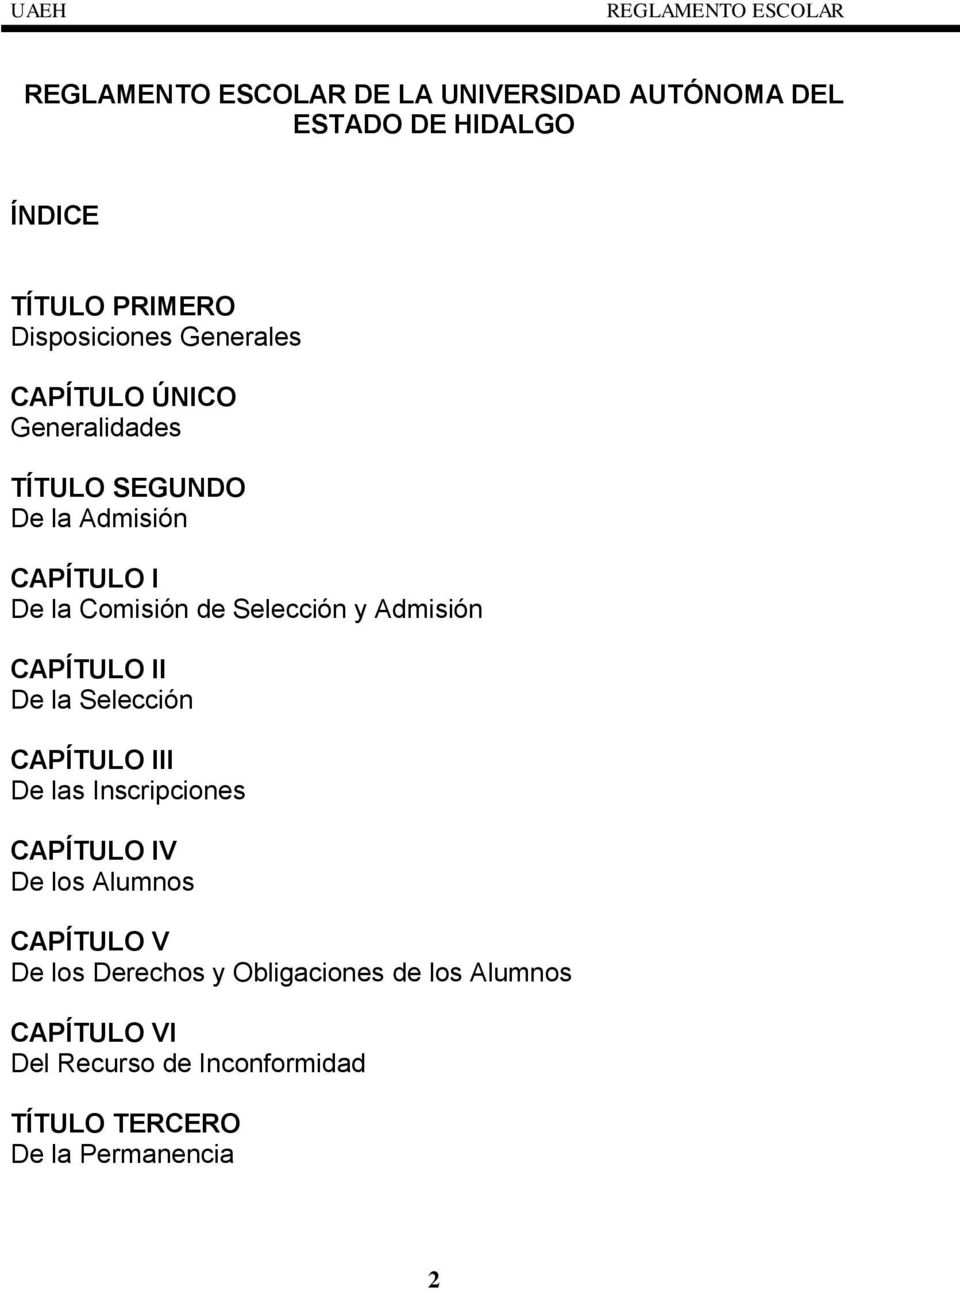 CAPÍTULO II De la Selección CAPÍTULO III De las Inscripciones CAPÍTULO IV De los Alumnos CAPÍTULO V De los